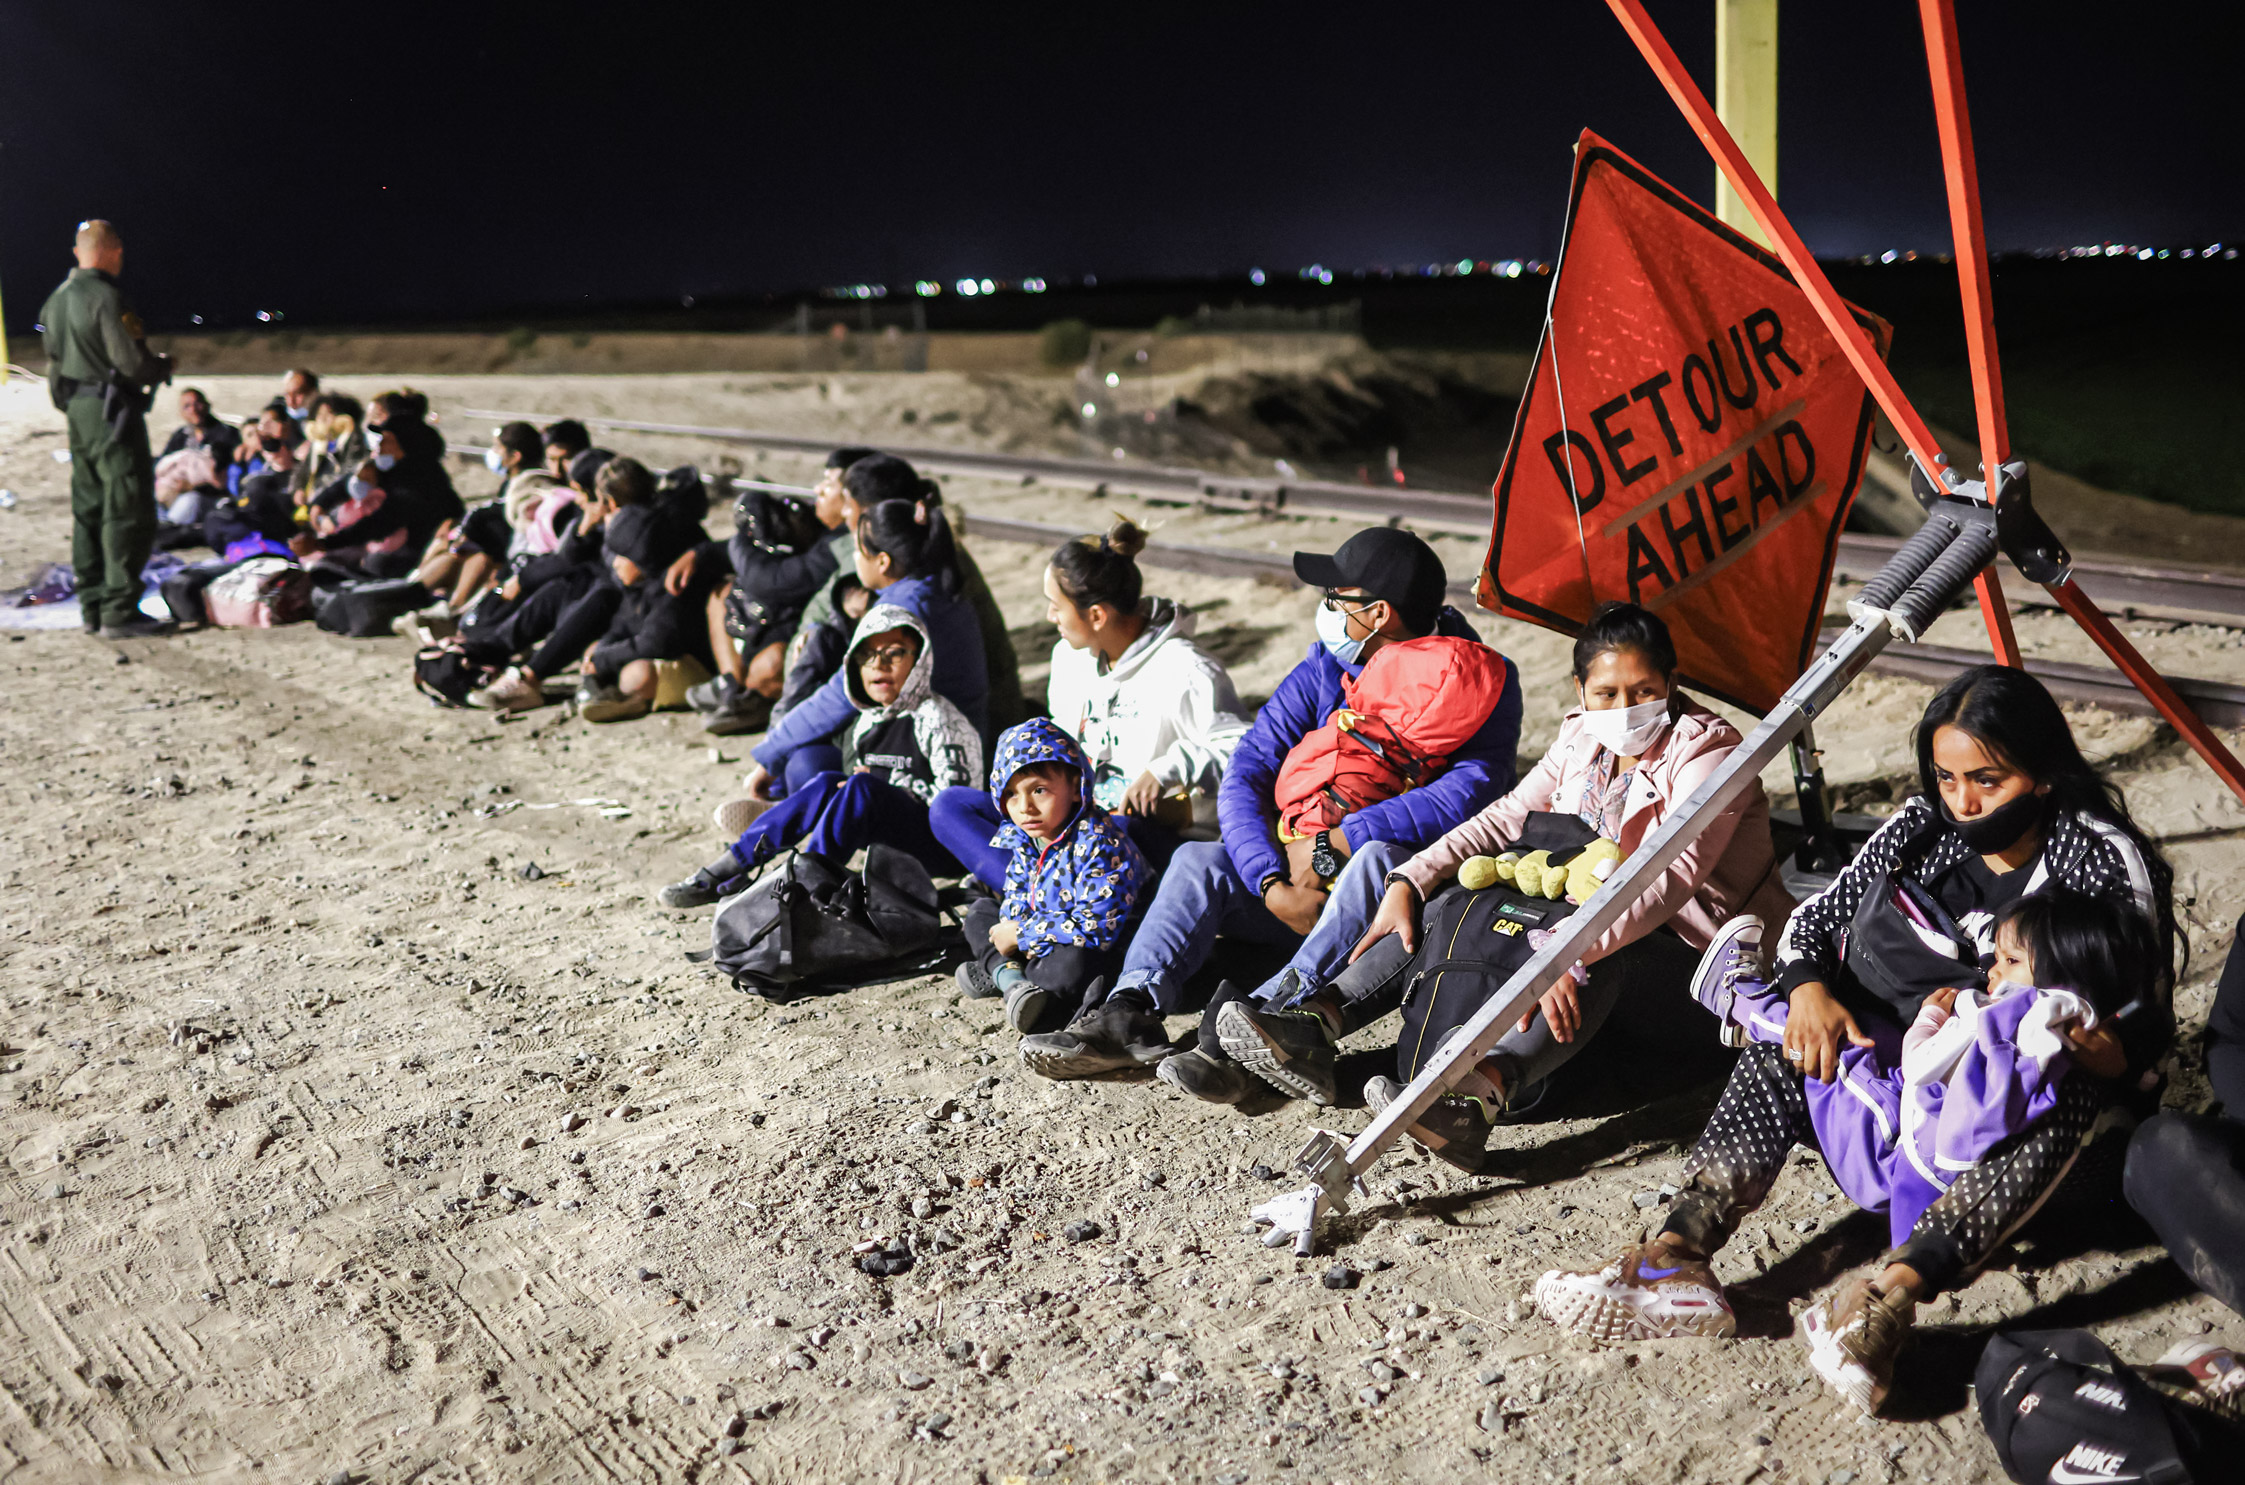 Những người nhập cư bất hợp pháp chờ để được các nhân viên Tuần tra Biên giới giải quyết thủ tục sau khi vượt biên từ Mexico, đằng sau là hàng rào biên giới Hoa Kỳ-Mexico, ở Yuma, Arizona, ngày 23/05/2022. (Ảnh: Mario Tama/Getty Images)